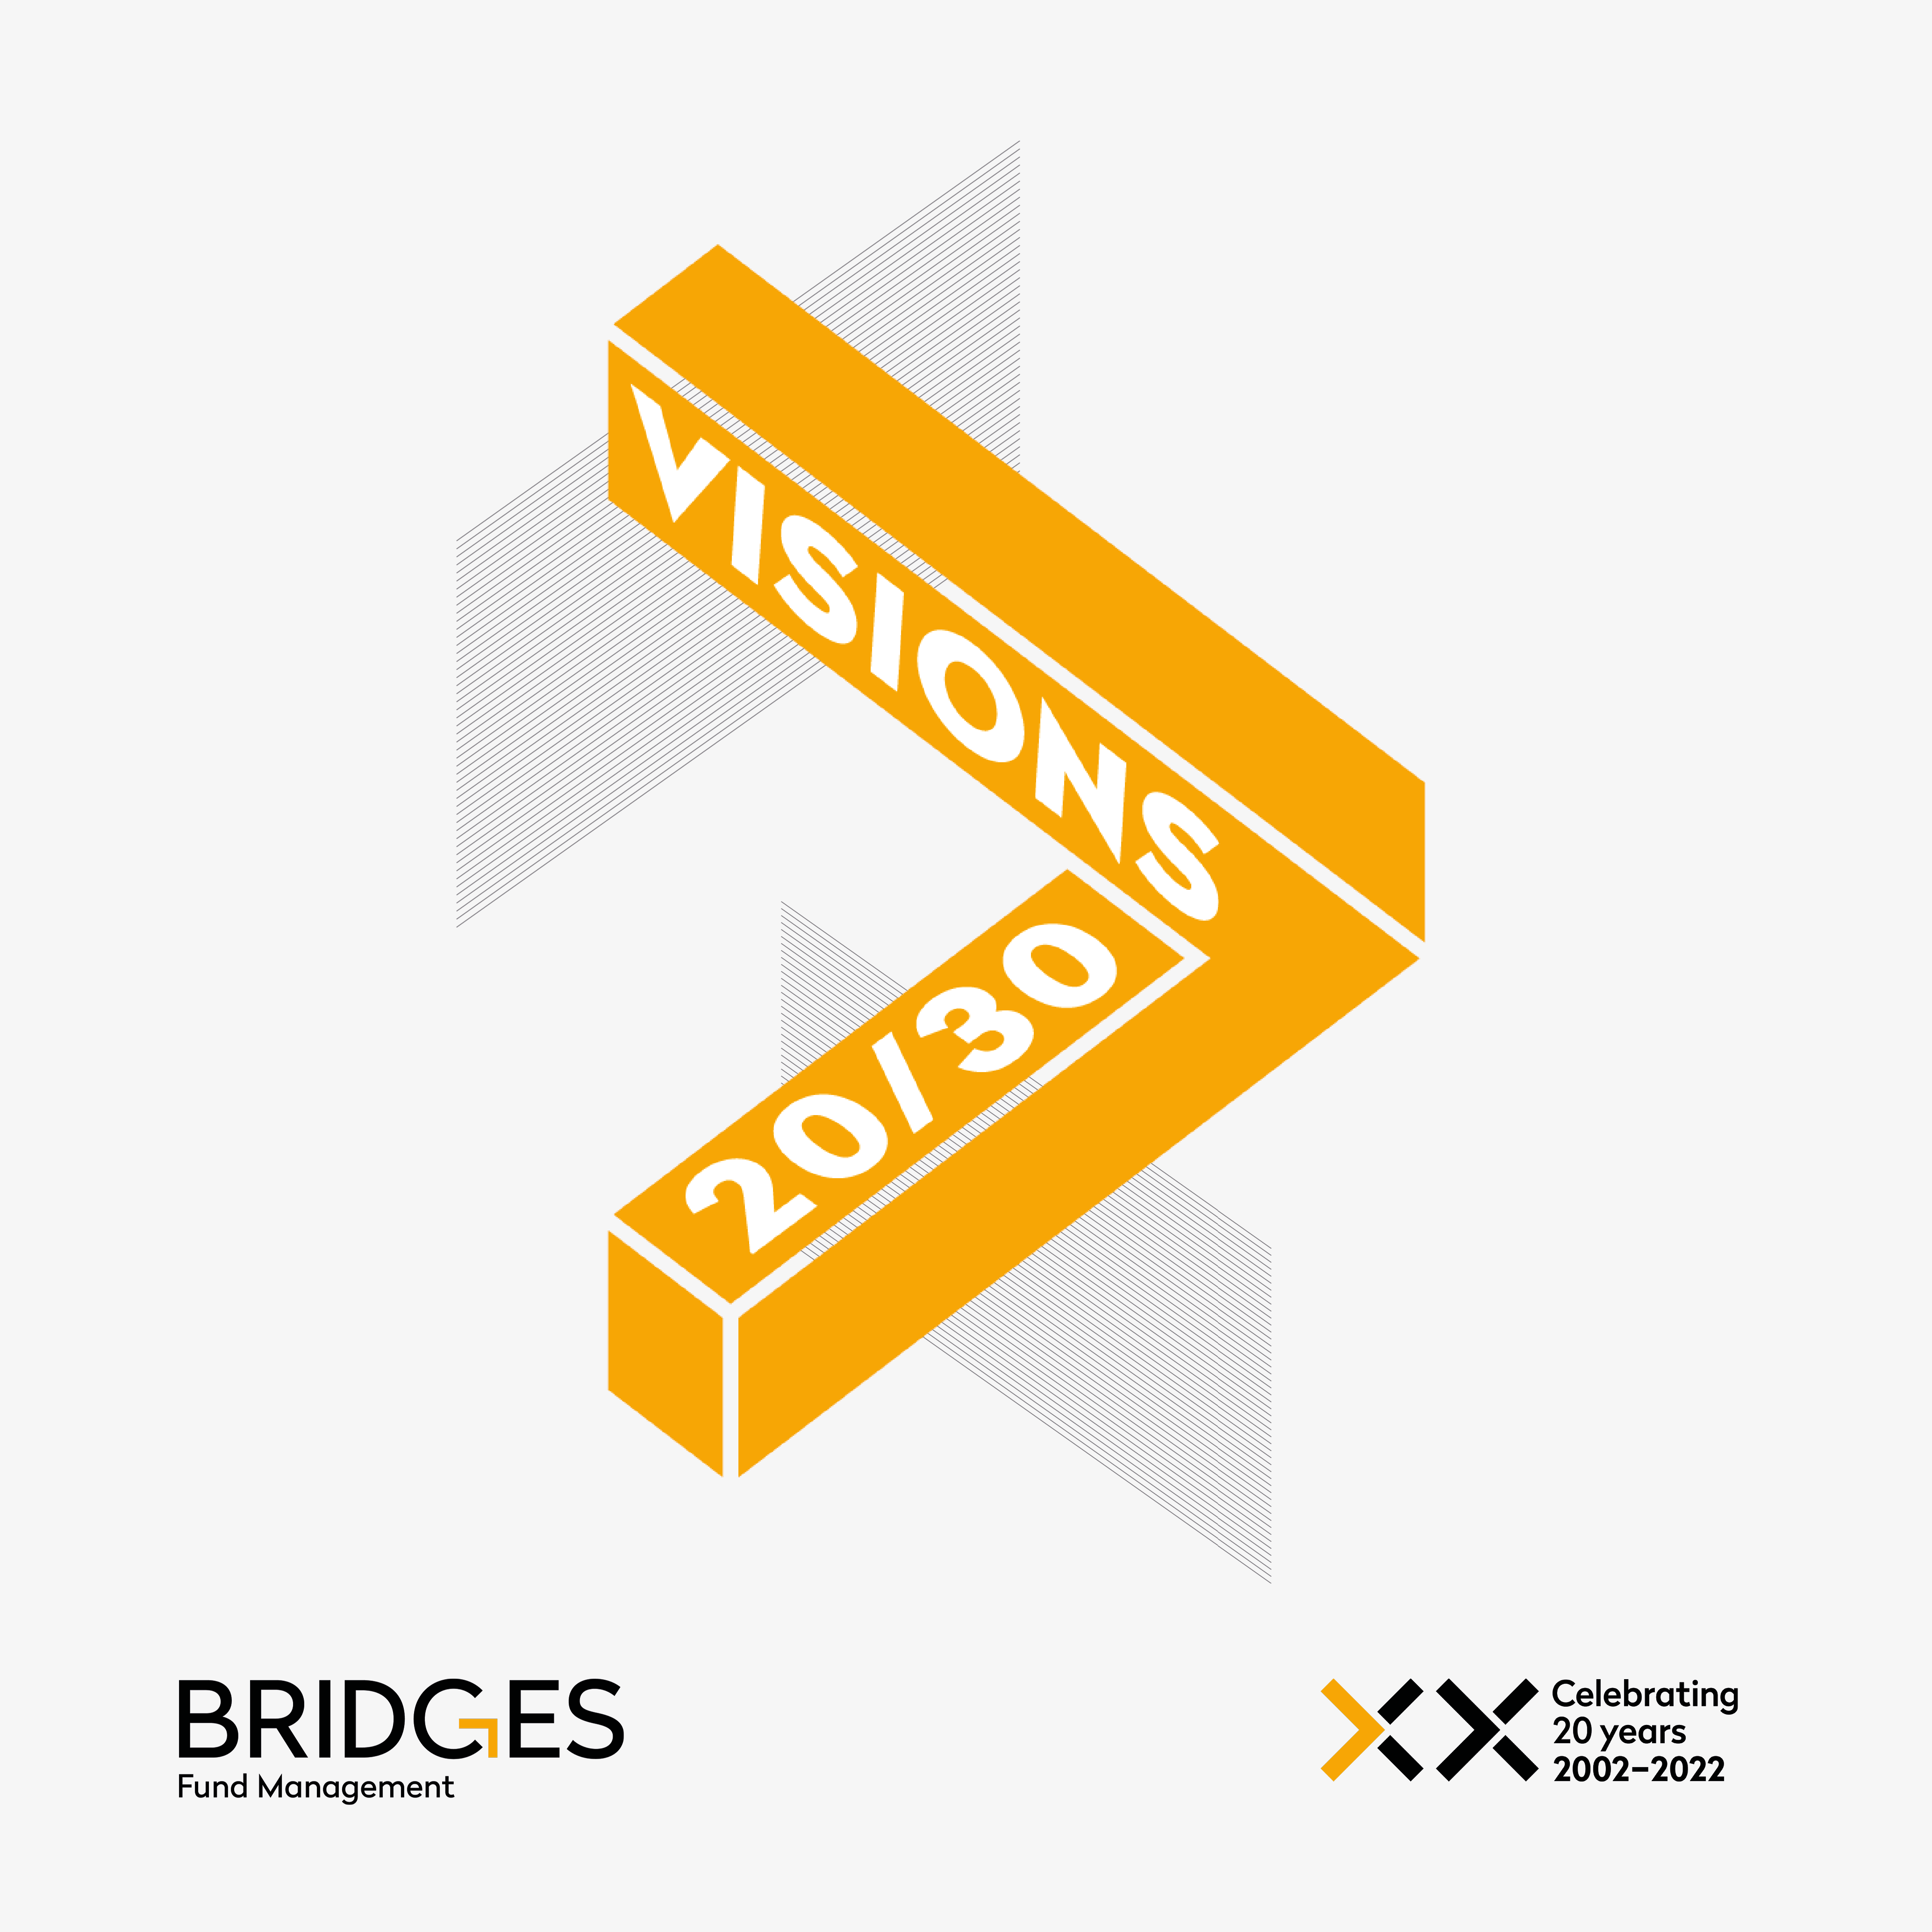 Watch: 20/30 Visions, Bridges Fund Management